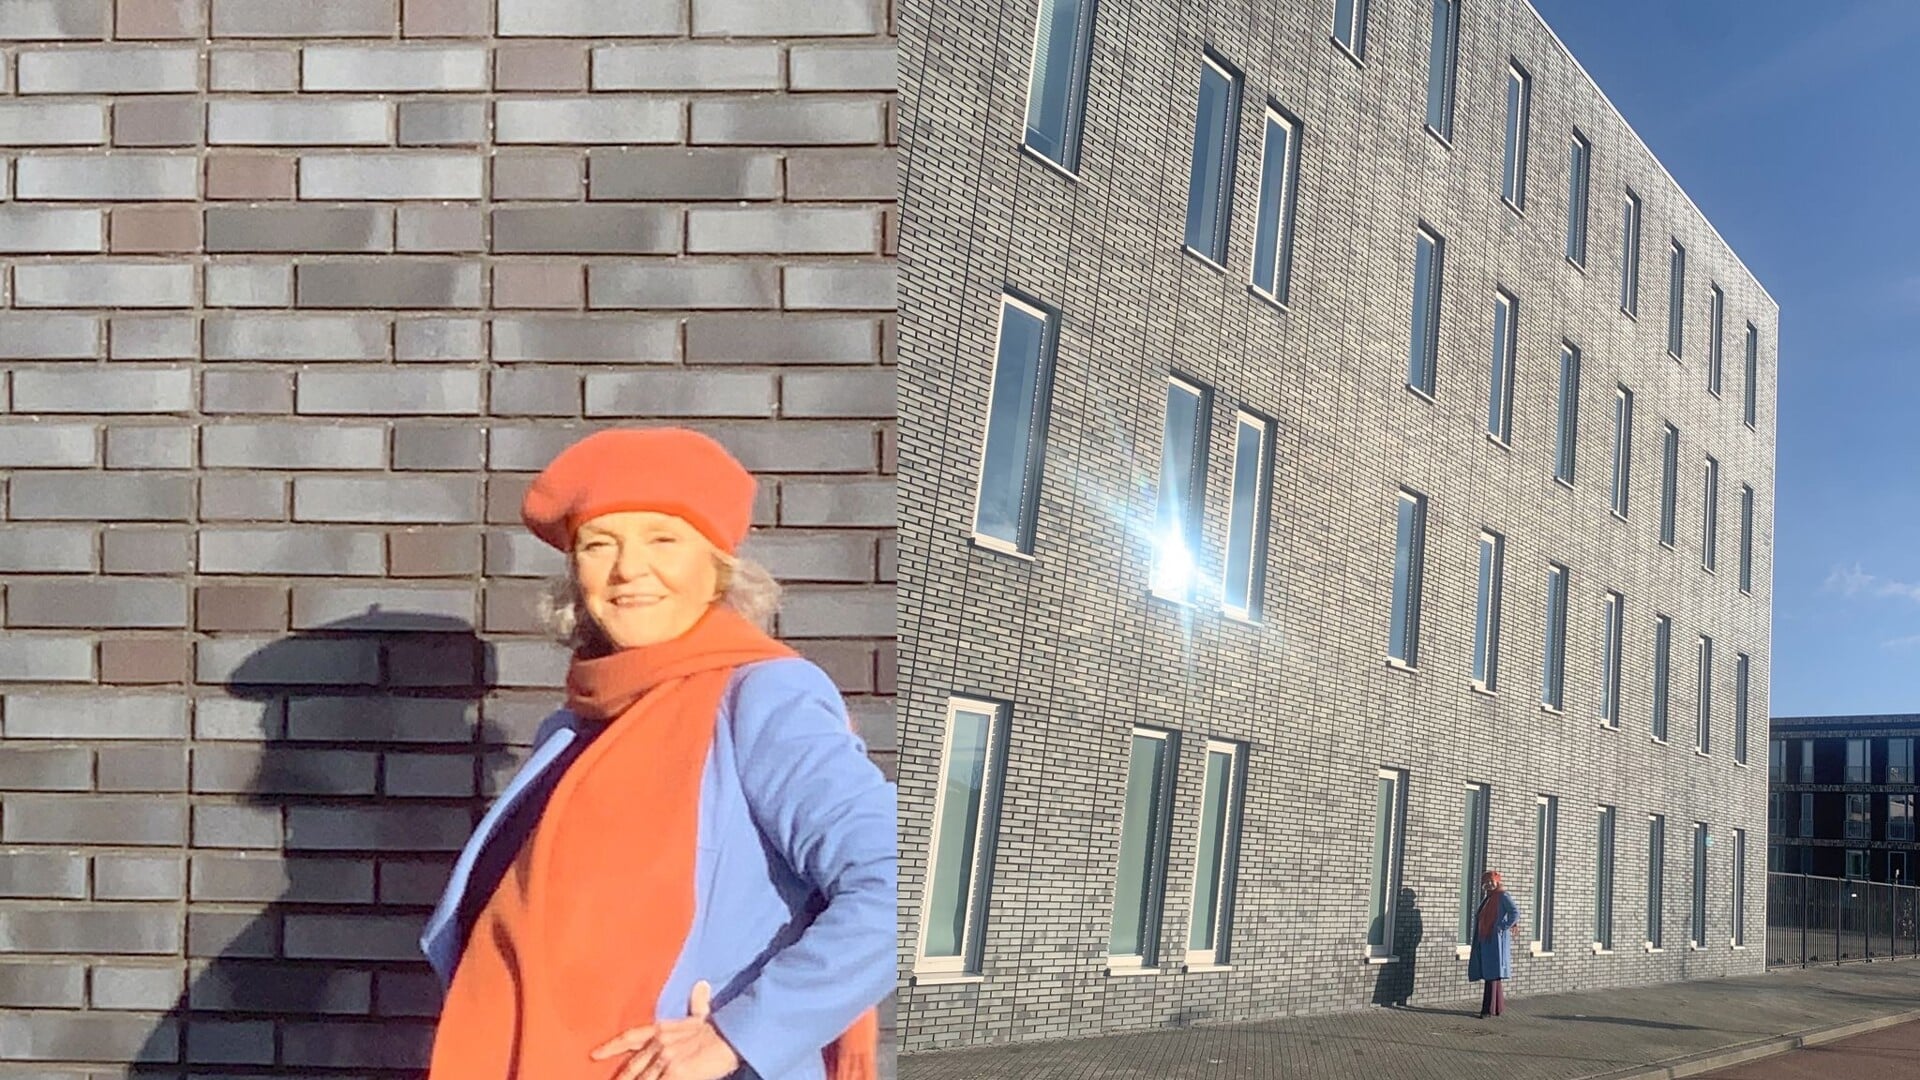 Wethouder Rosa Molenaar (ITH) is verheugd met de ontwikkeling dat het oude KPN-gebouw wordt verbouwd tot koopappartementen. 